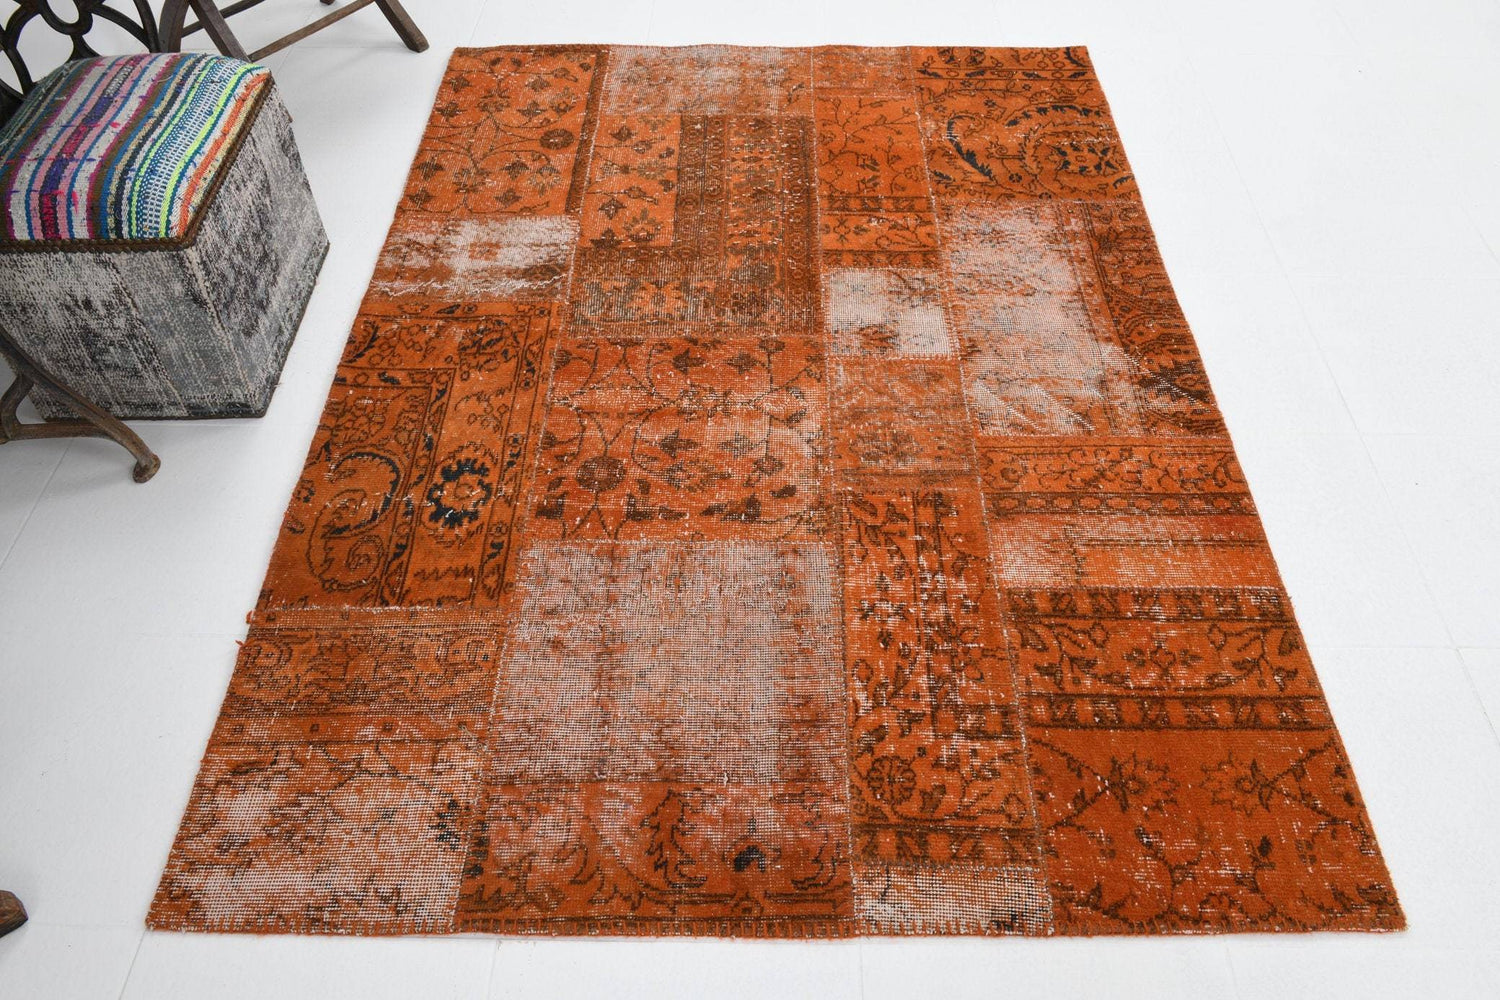 4' x 6' Vintage rug